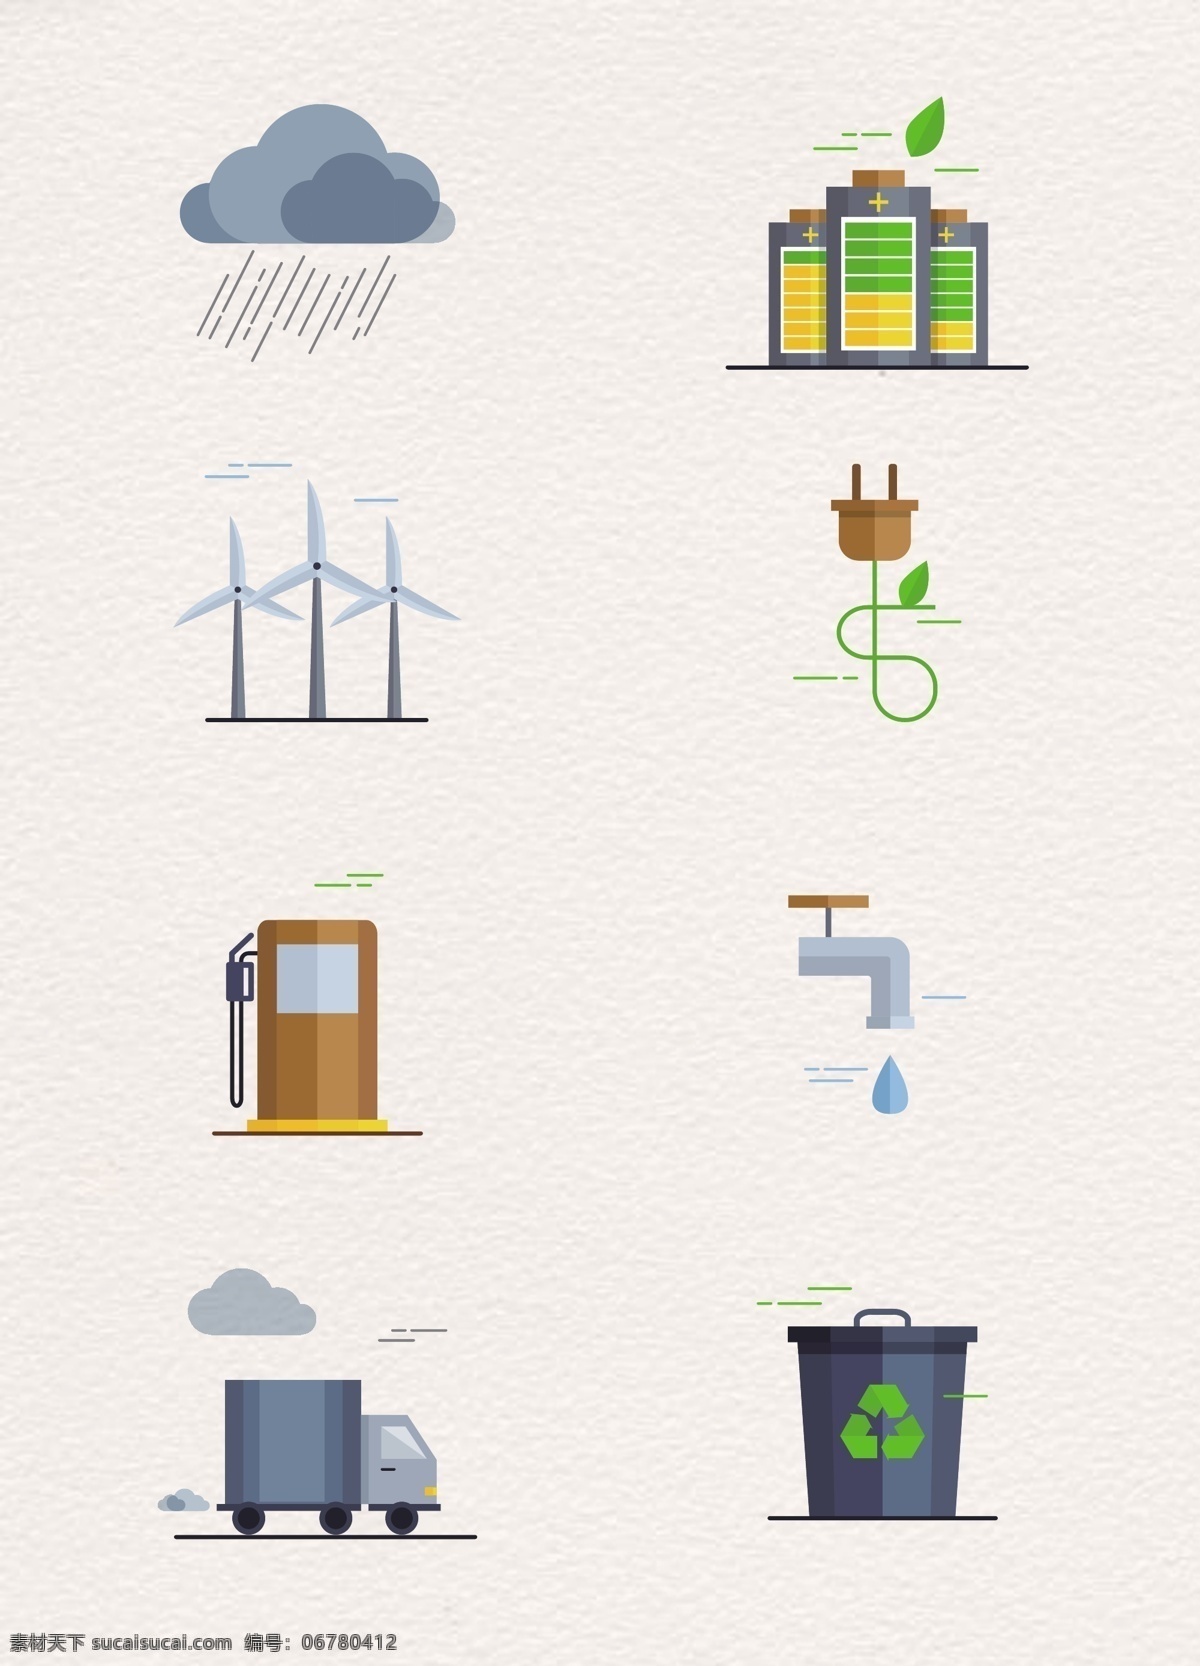 卡通 能源 节能环保 图标素材 扁平化 水龙头 垃圾桶 图标 乌云 下雨 风能 电能 水资源 环保宣传 矢量